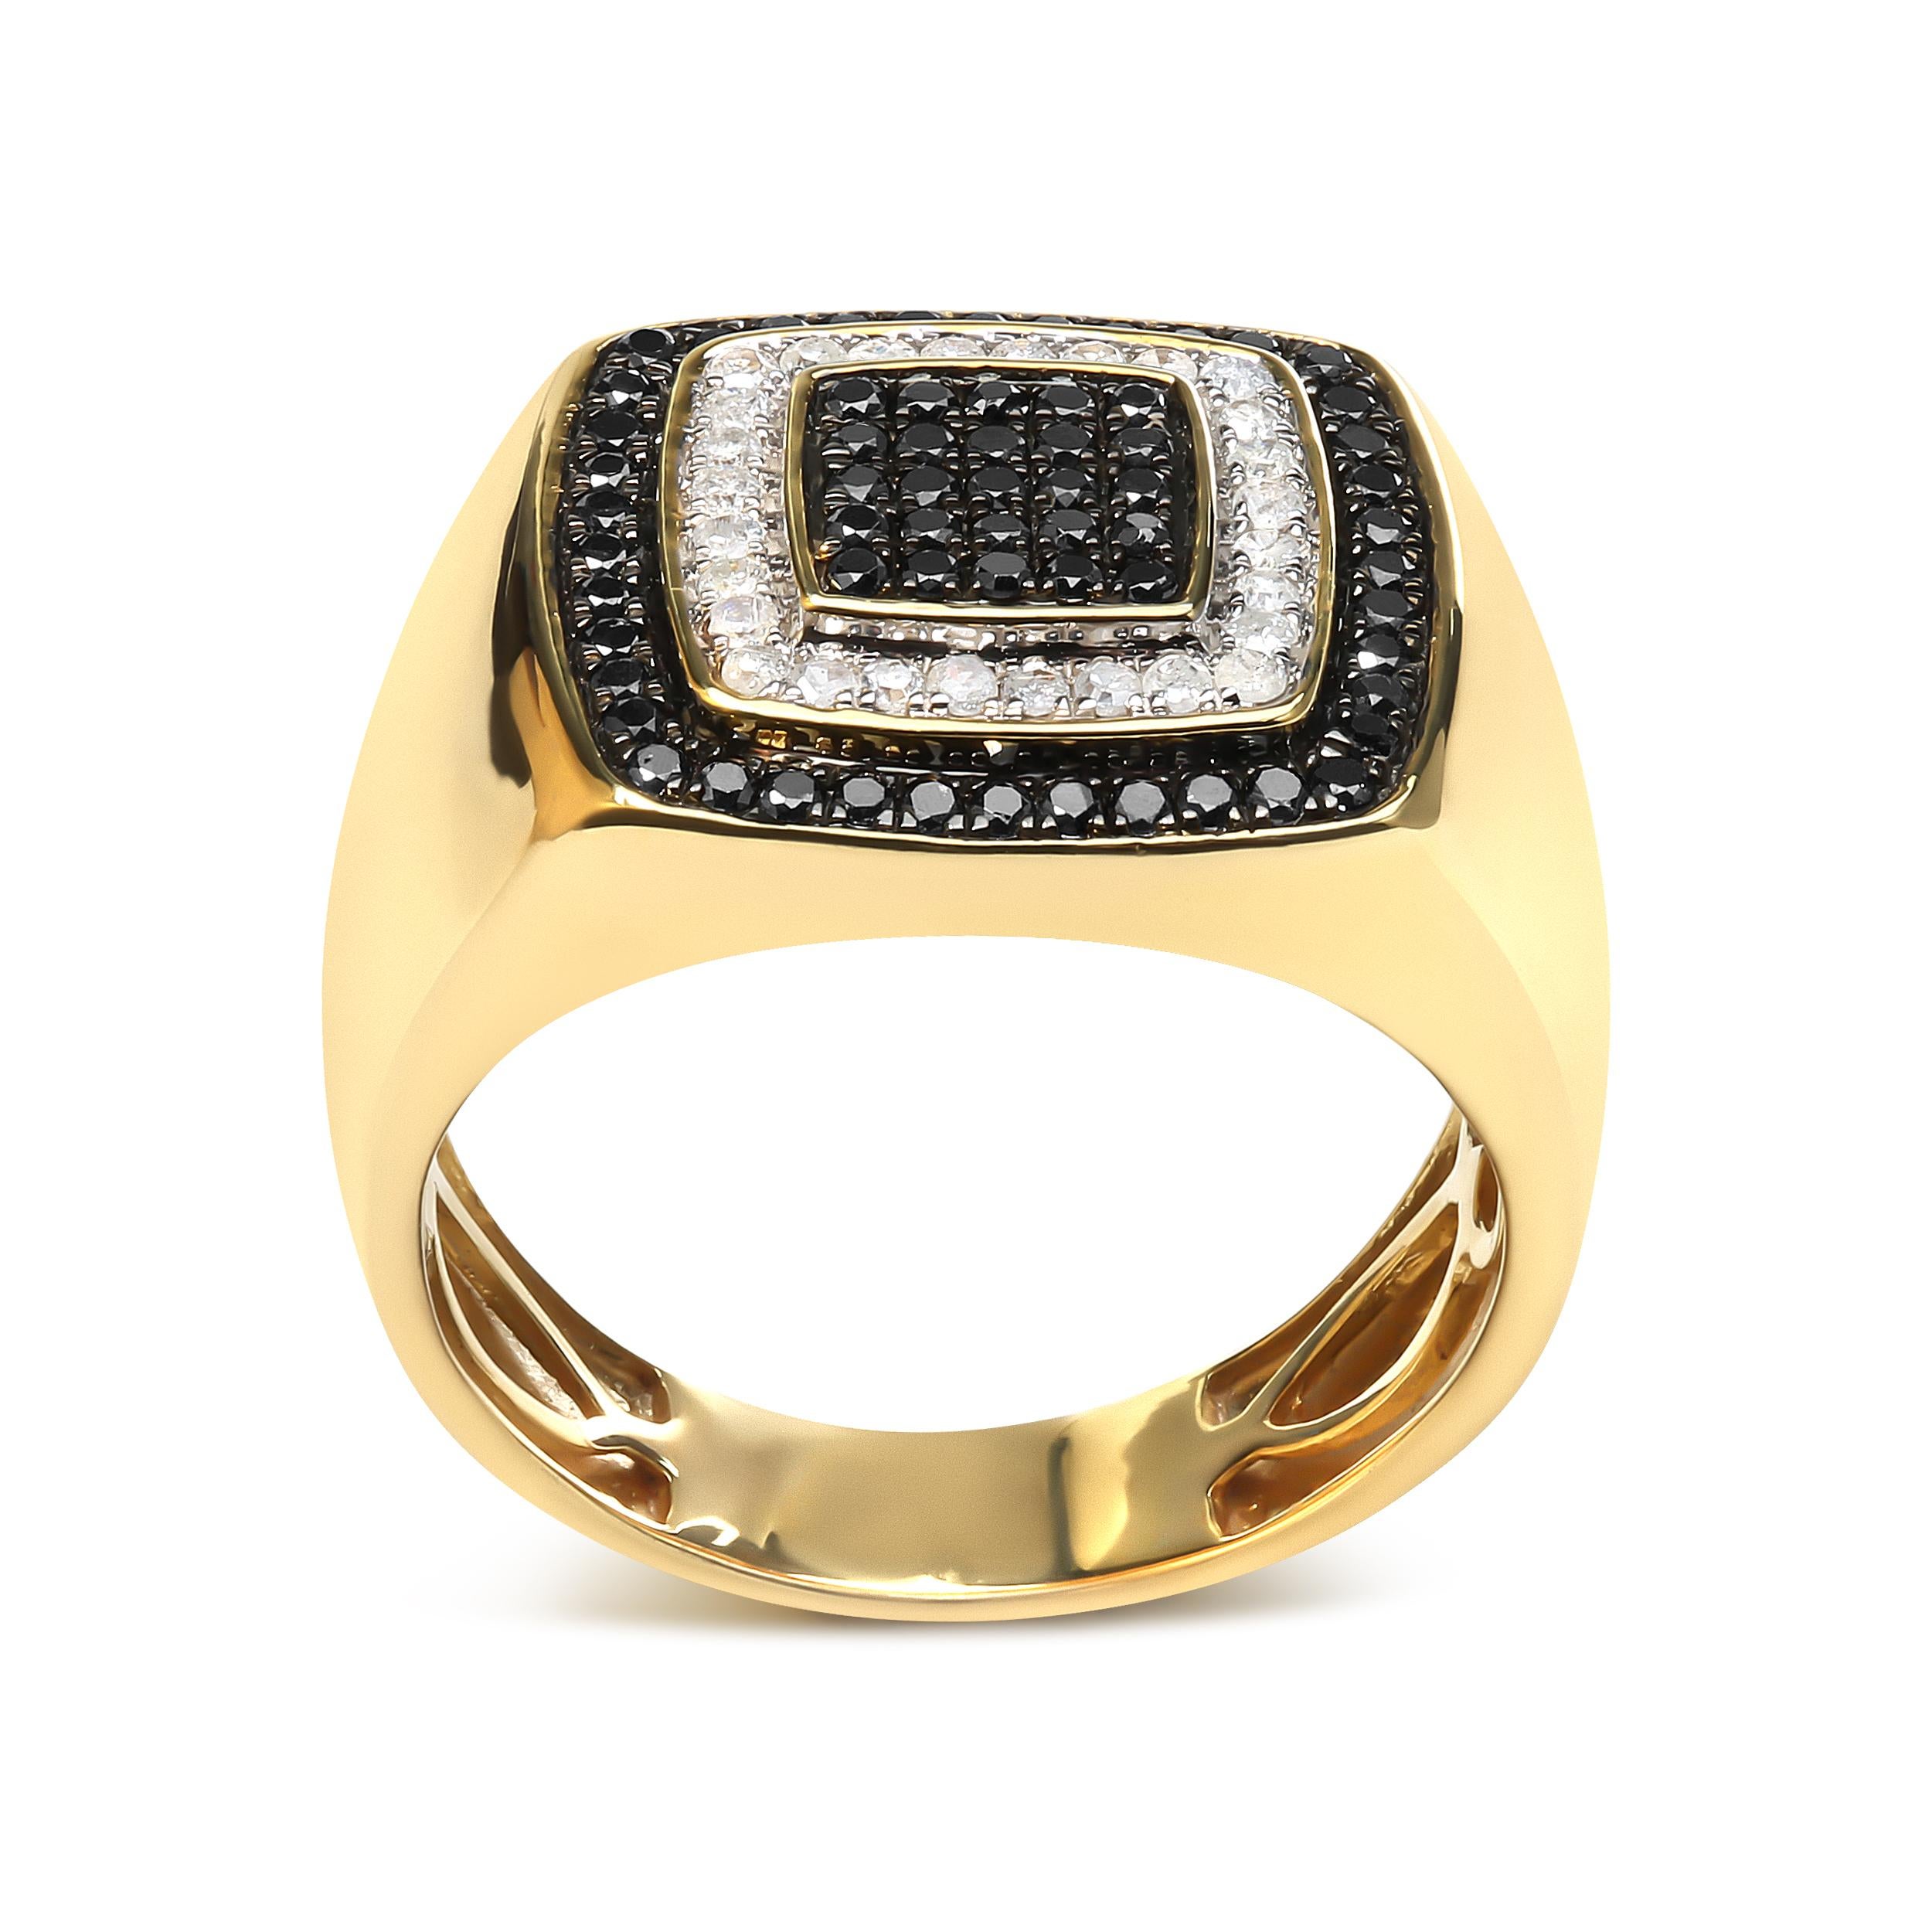 Dieser atemberaubende schwarz-weiße Diamantring für Männer ist ein wahres Zeugnis der Handwerkskunst. Dieser Ring aus 10 Karat Gelbgold besticht durch sein einzigartiges Design, das die 93 natürlichen Diamanten im Rundschliff mit insgesamt 0,75